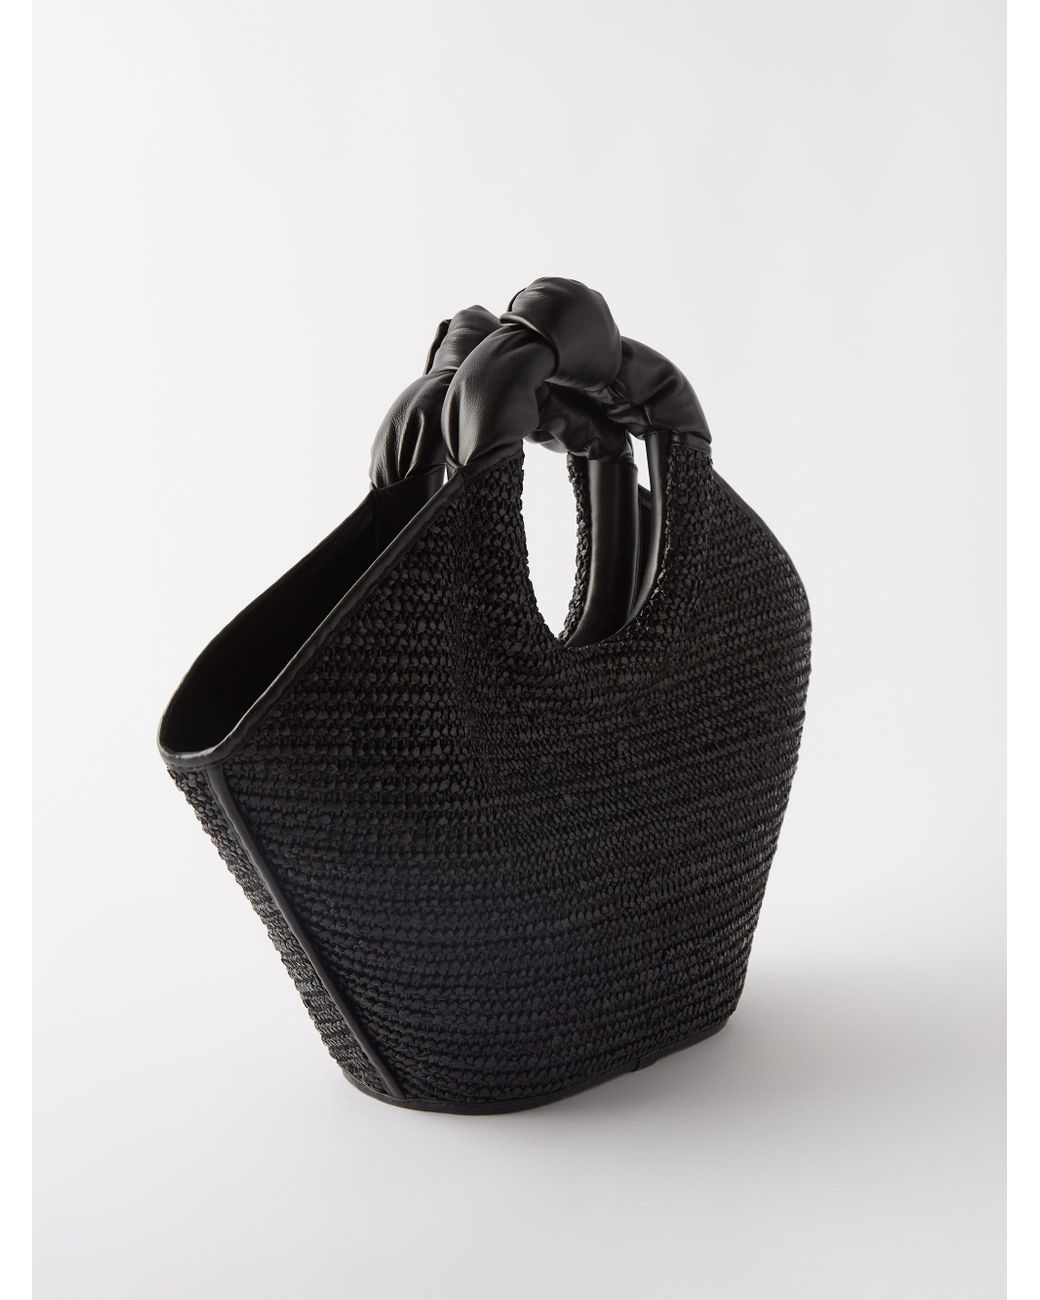 Mini cabas leather & raffia tote bag - Hereu - Women